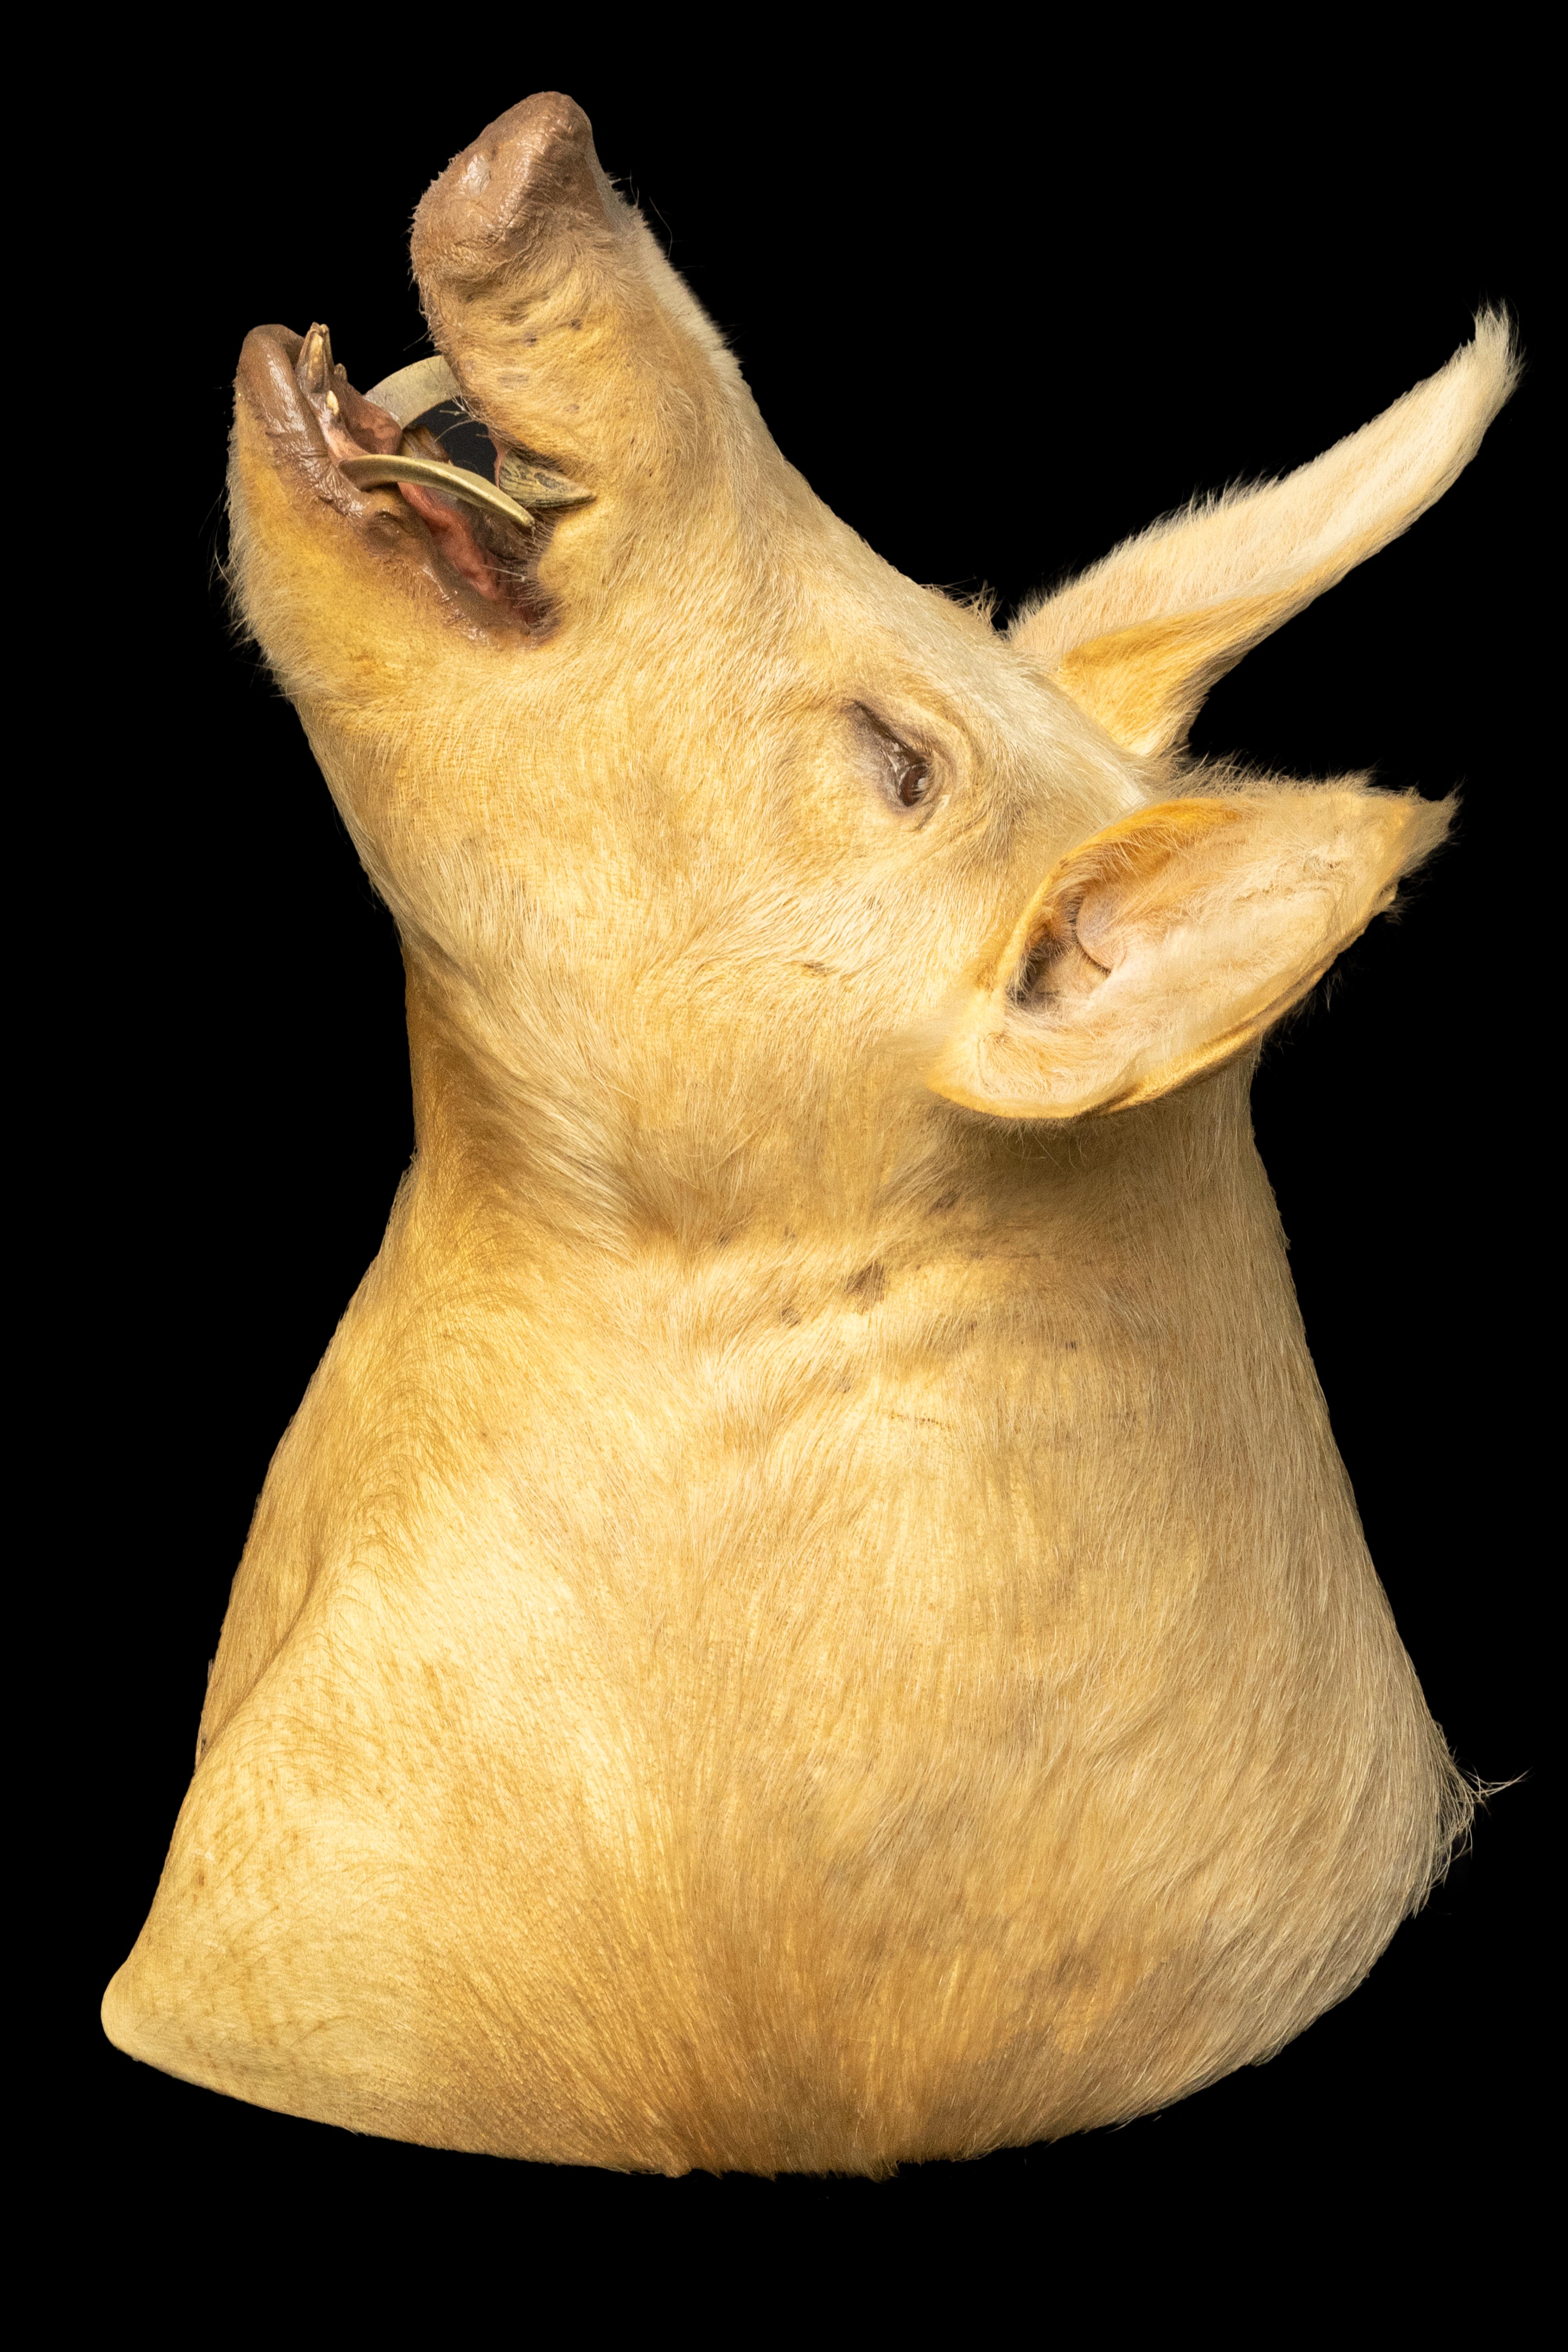 Cette taxidermie de porc monté sur l'épaule est un ajout unique et impressionnant à toute collection. La monture capture l'essence de cet animal de ferme commun, avec son museau distinct, ses grandes oreilles et ses défenses.

Mesurant 26